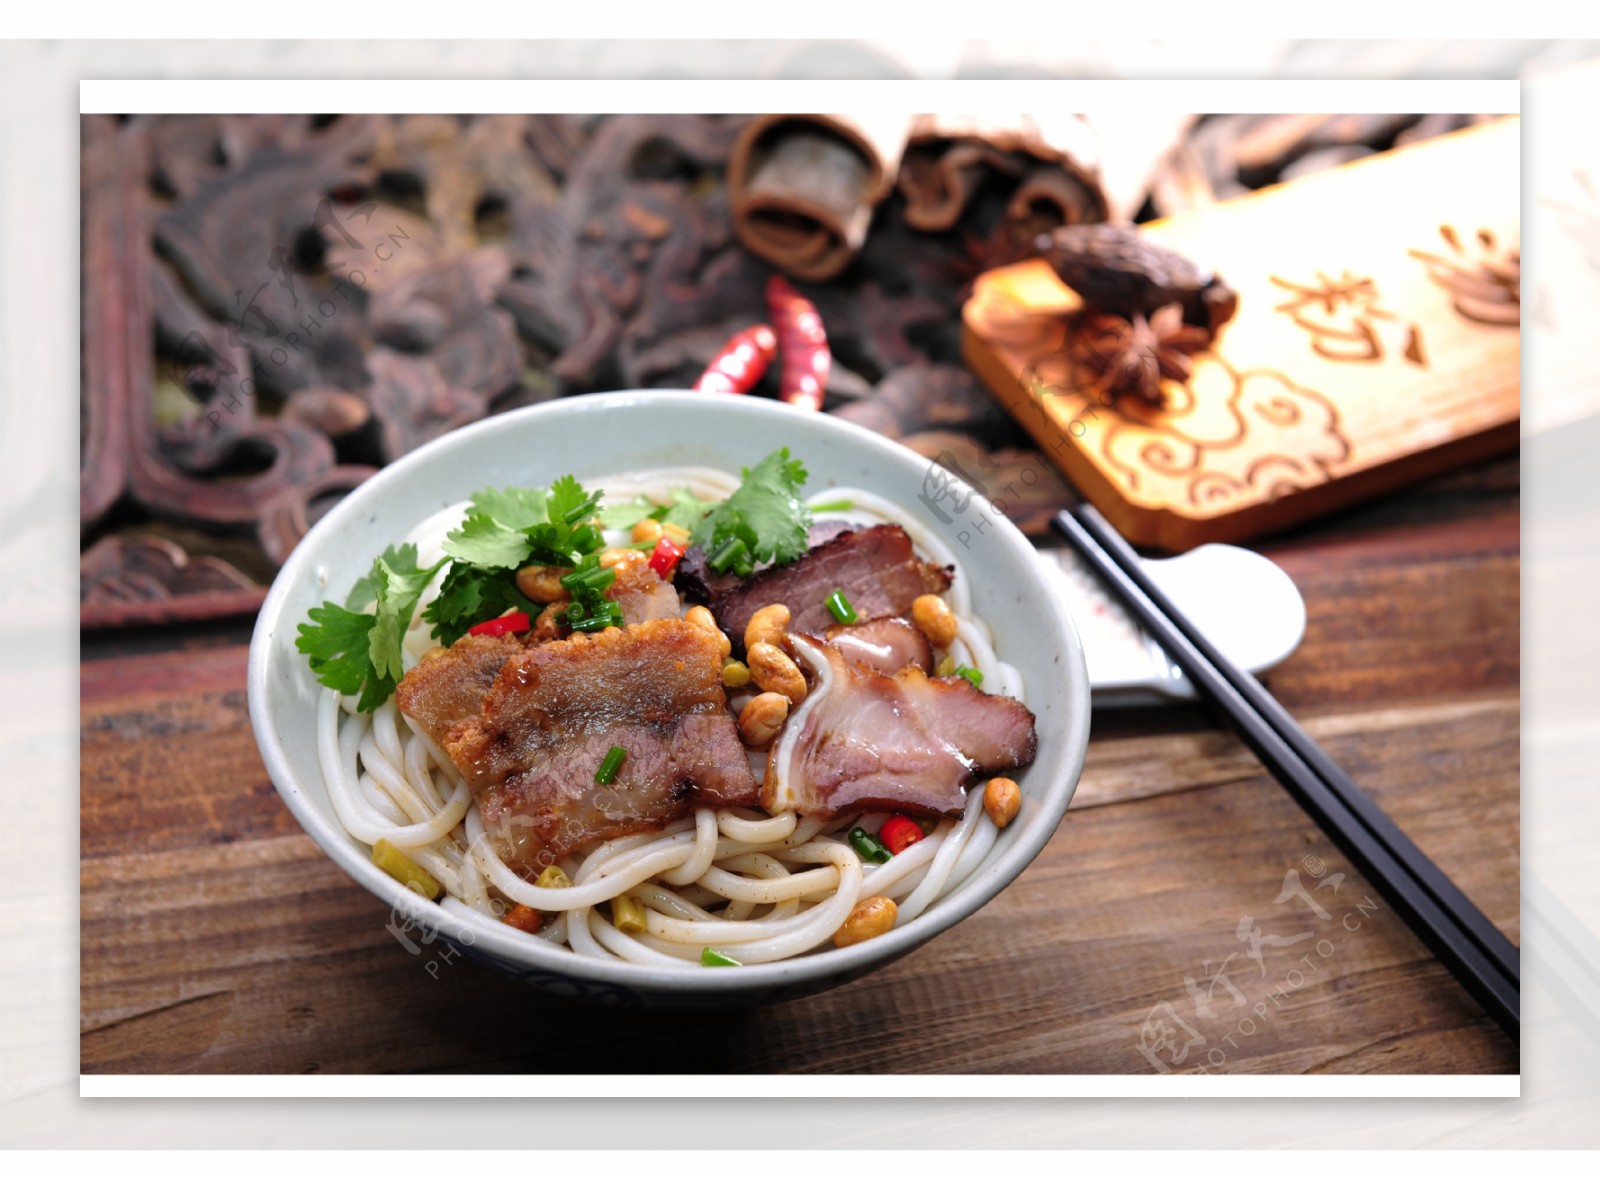 广西首届餐博会在玉林举行 优质广西食材制造“桂菜味道”_新浪财经_新浪网